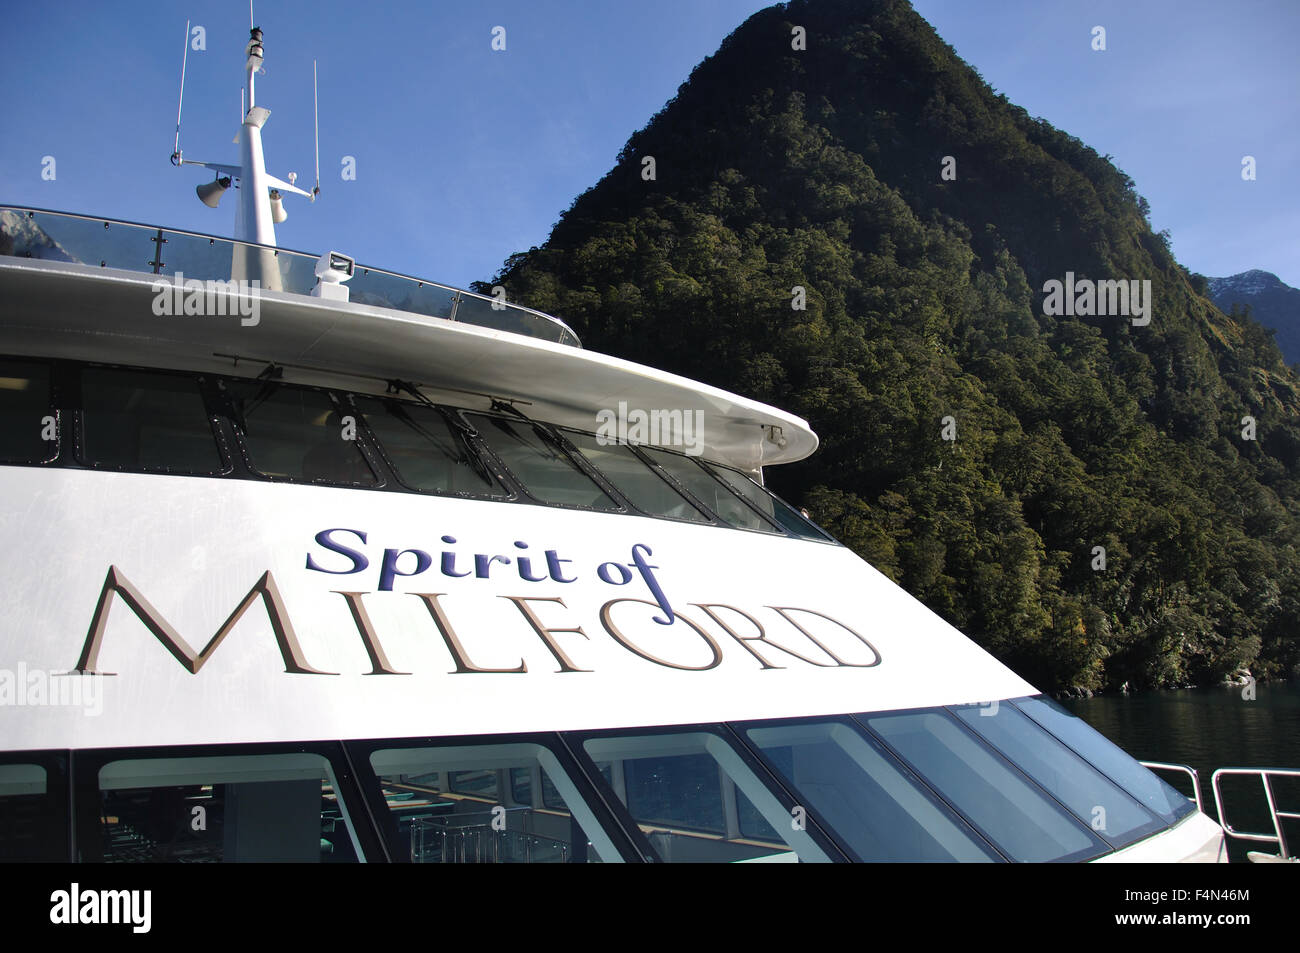 Lanzamiento turístico en Milford Sound, Fiordland, Nueva Zelanda Foto de stock